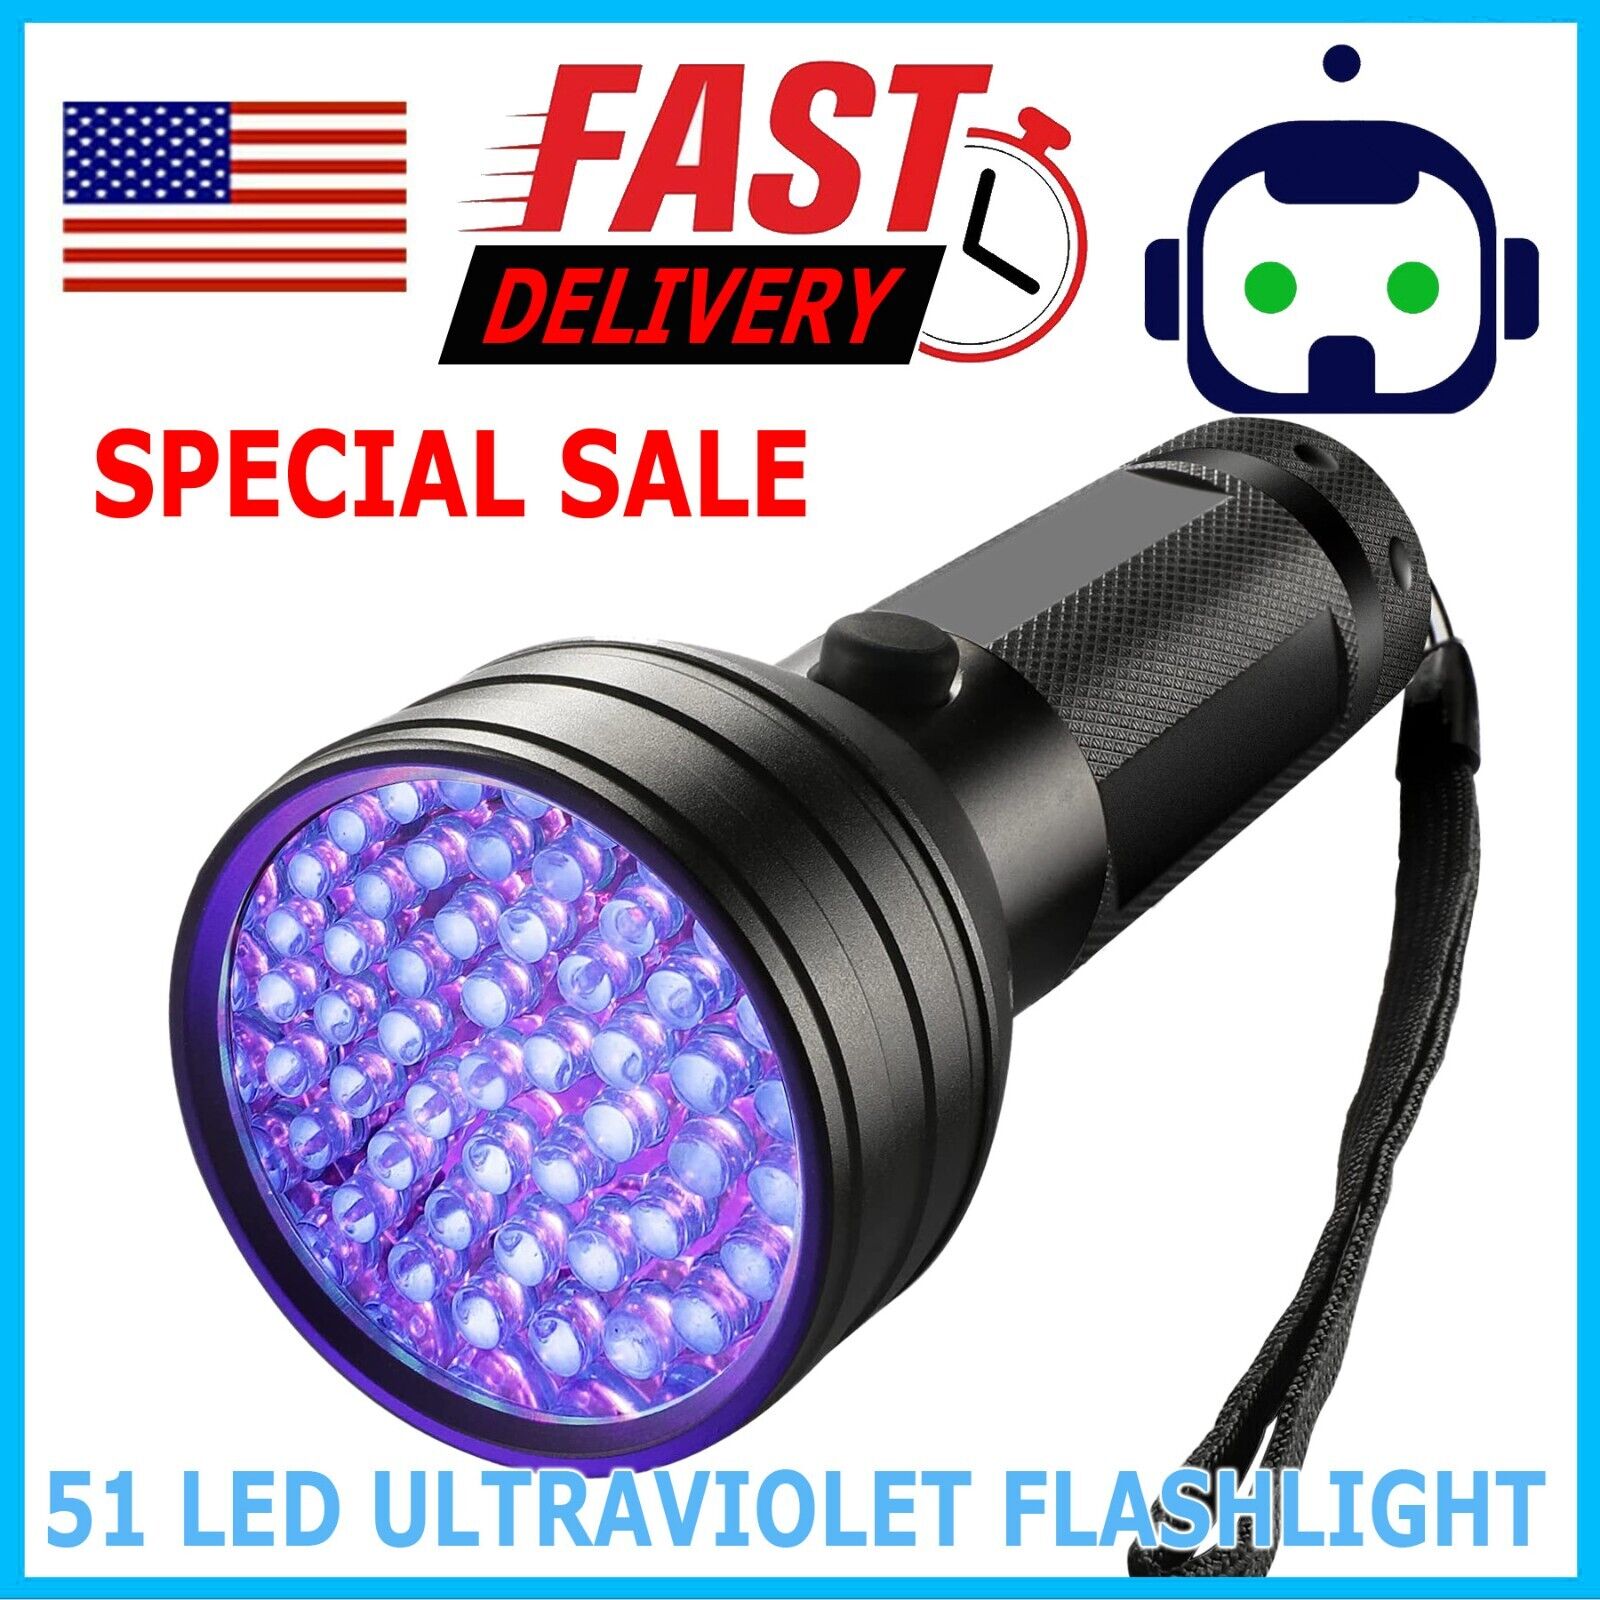 100 Led Flashlight Blacklight Inspection Lamp Torch